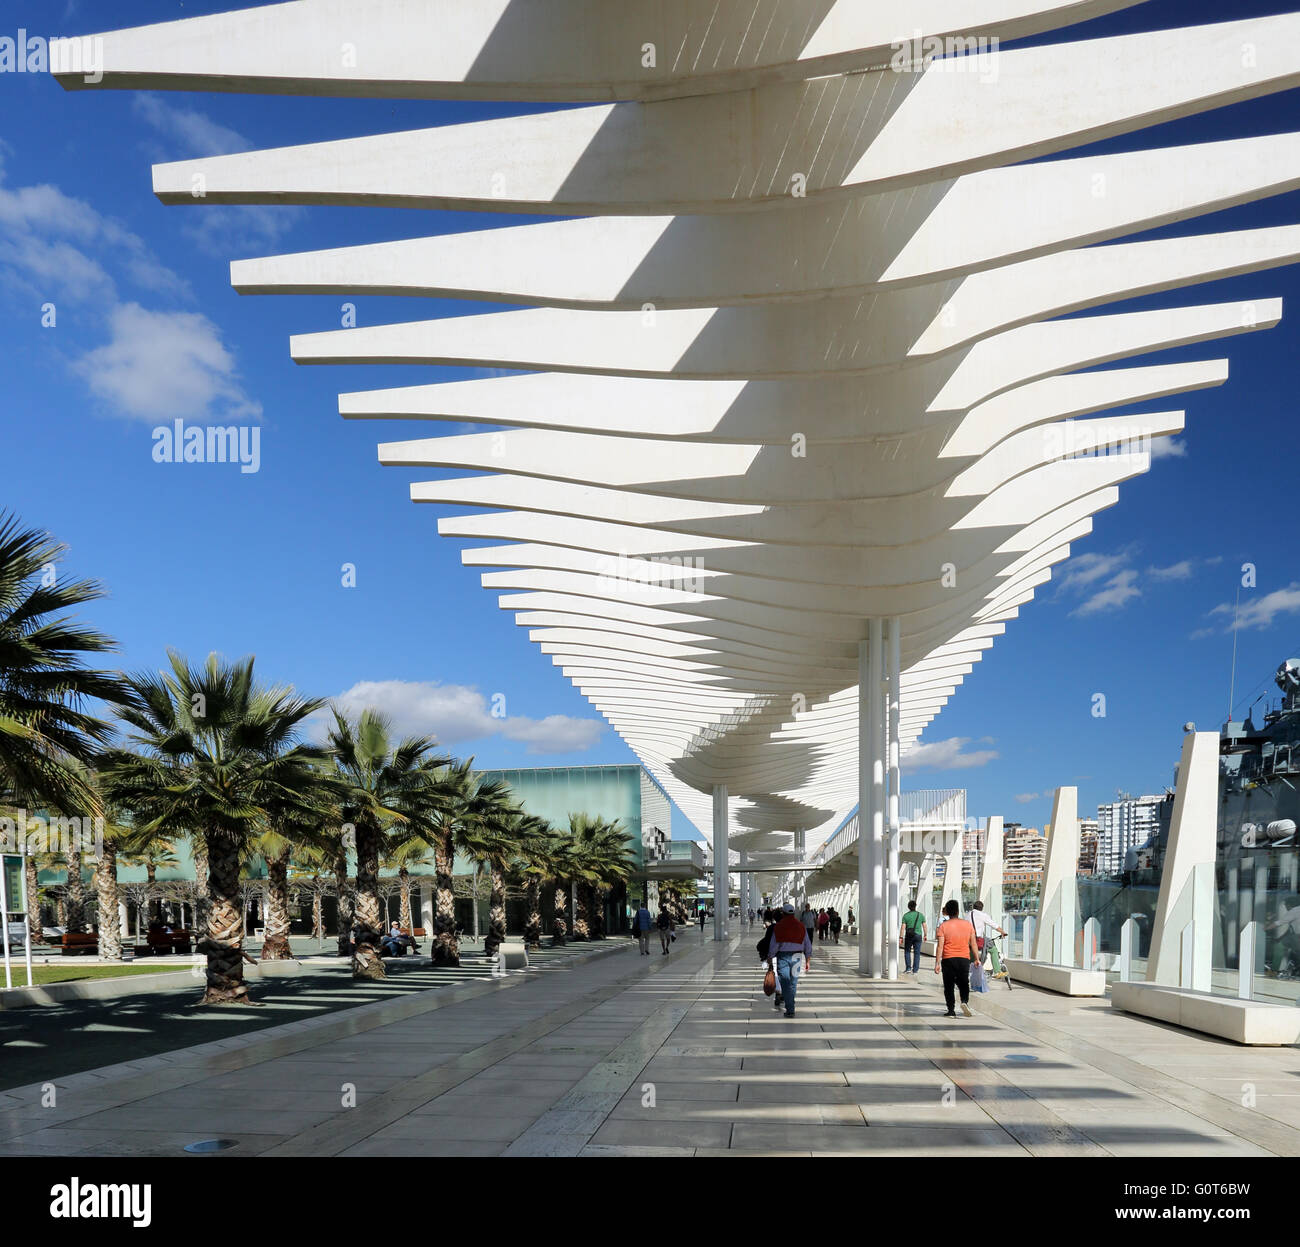 The impressive architectural structure at Paseo Maritimo del Muelle, Malaga, Spain Stock Photo